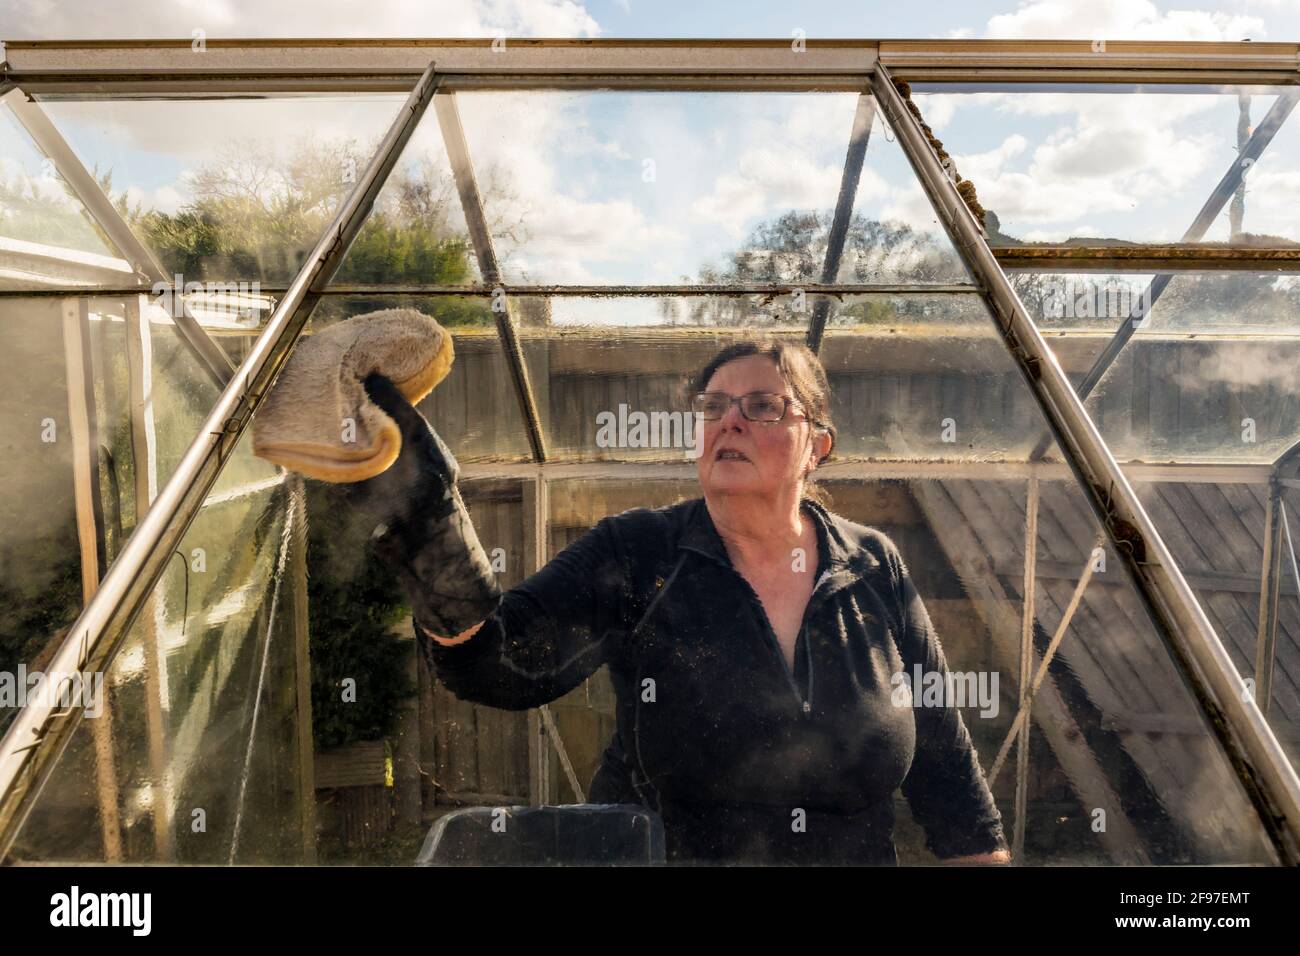 Frau renoviert ein altes Gewächshaus. Waschen, Reinigen und Desinfizieren des Glases, um Algen vor Beginn einer neuen Vegetationsperiode zu entfernen. Stockfoto